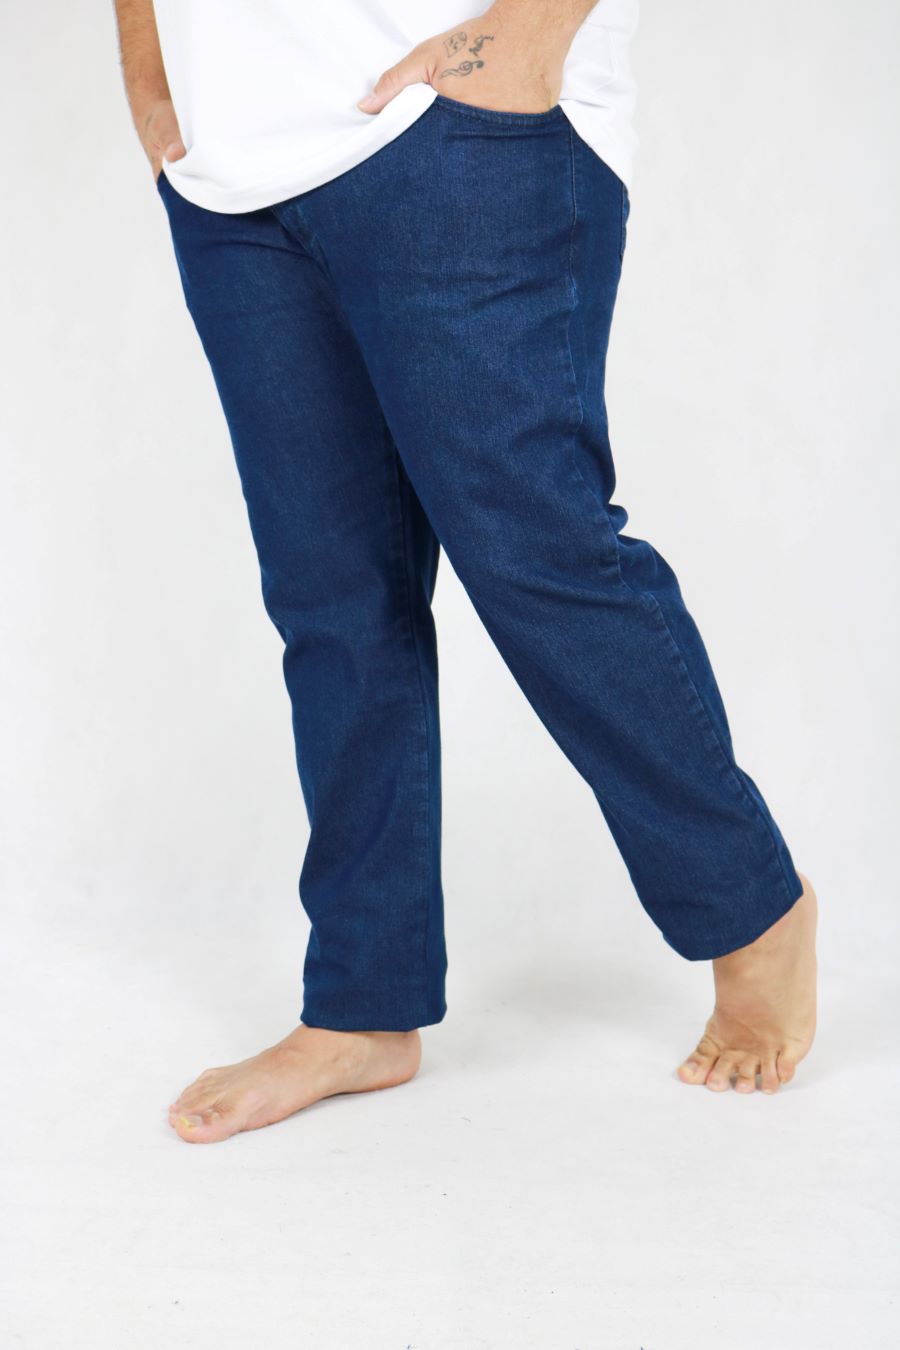 Calça Obeland jeans tradicional Plus Size